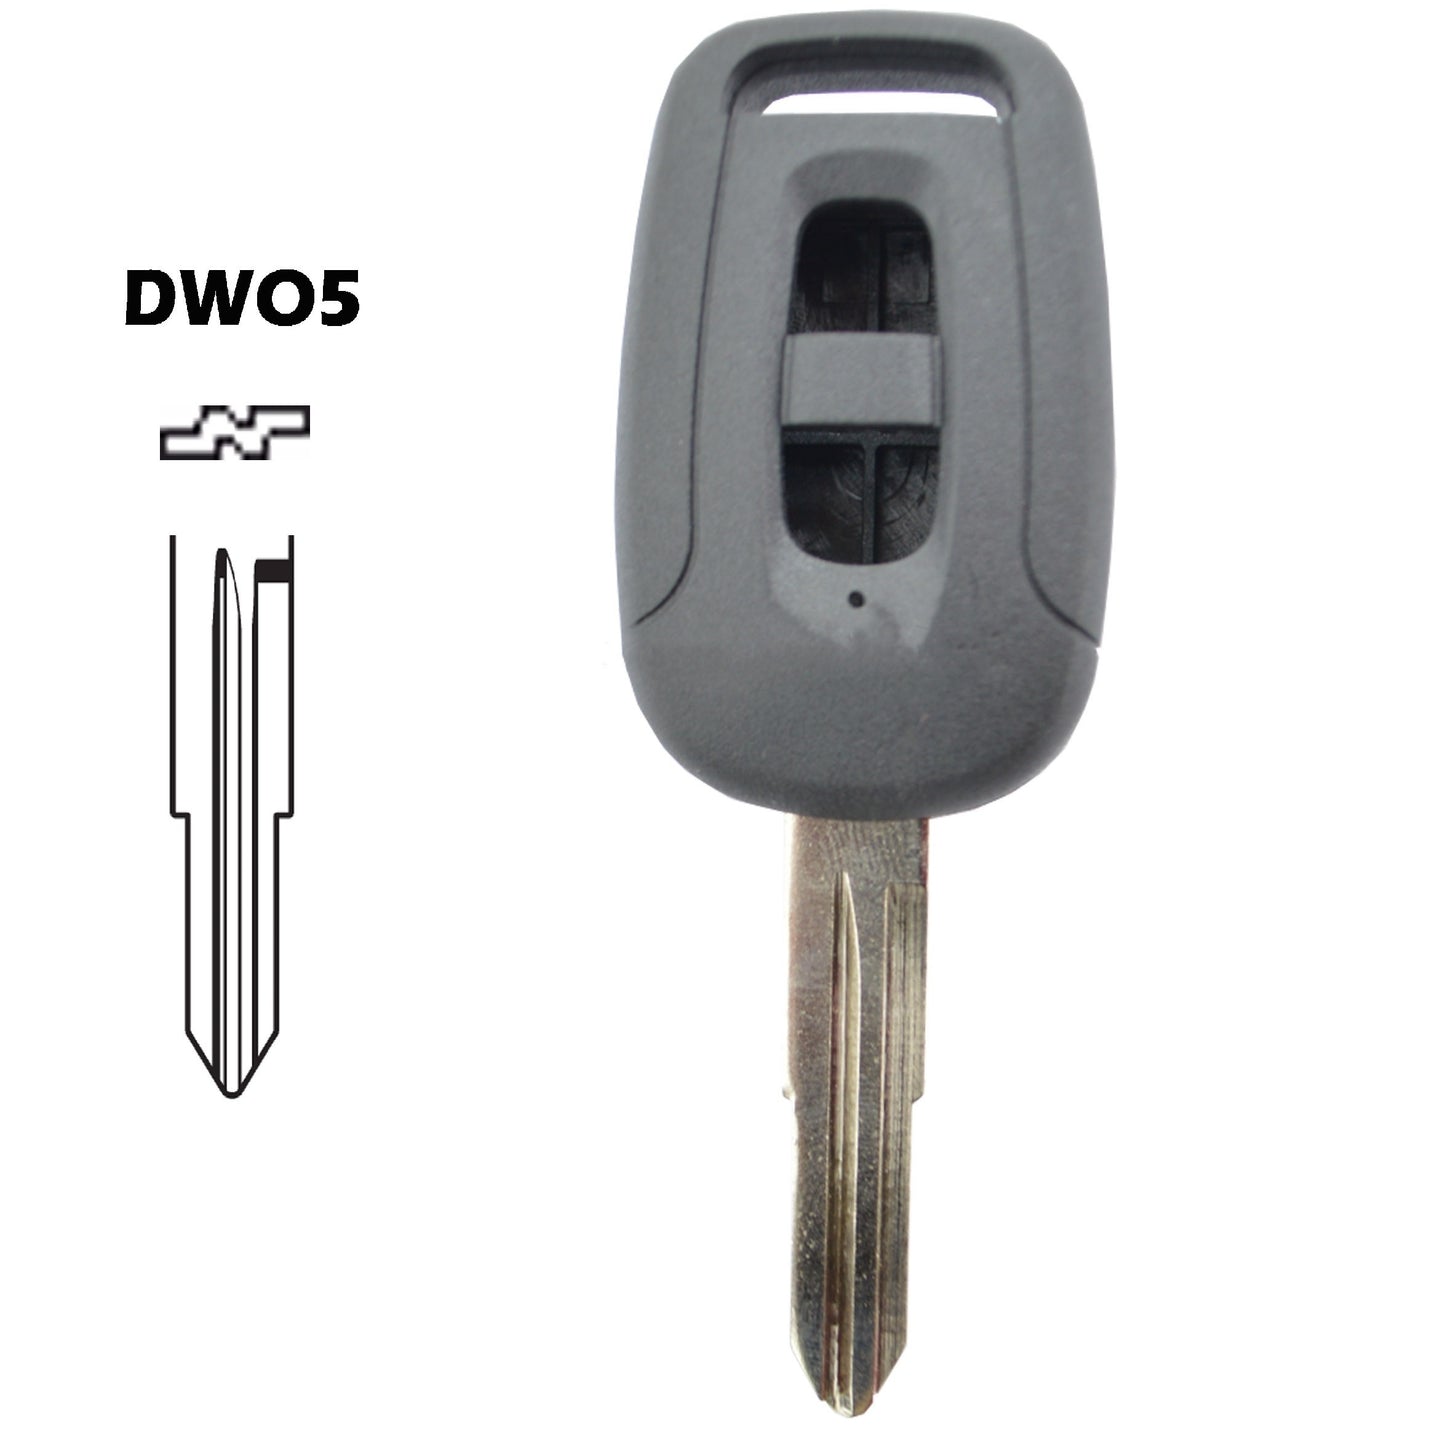 Caixa comando 2 botões chave DWO5 Chevrolet Opel Daewoo